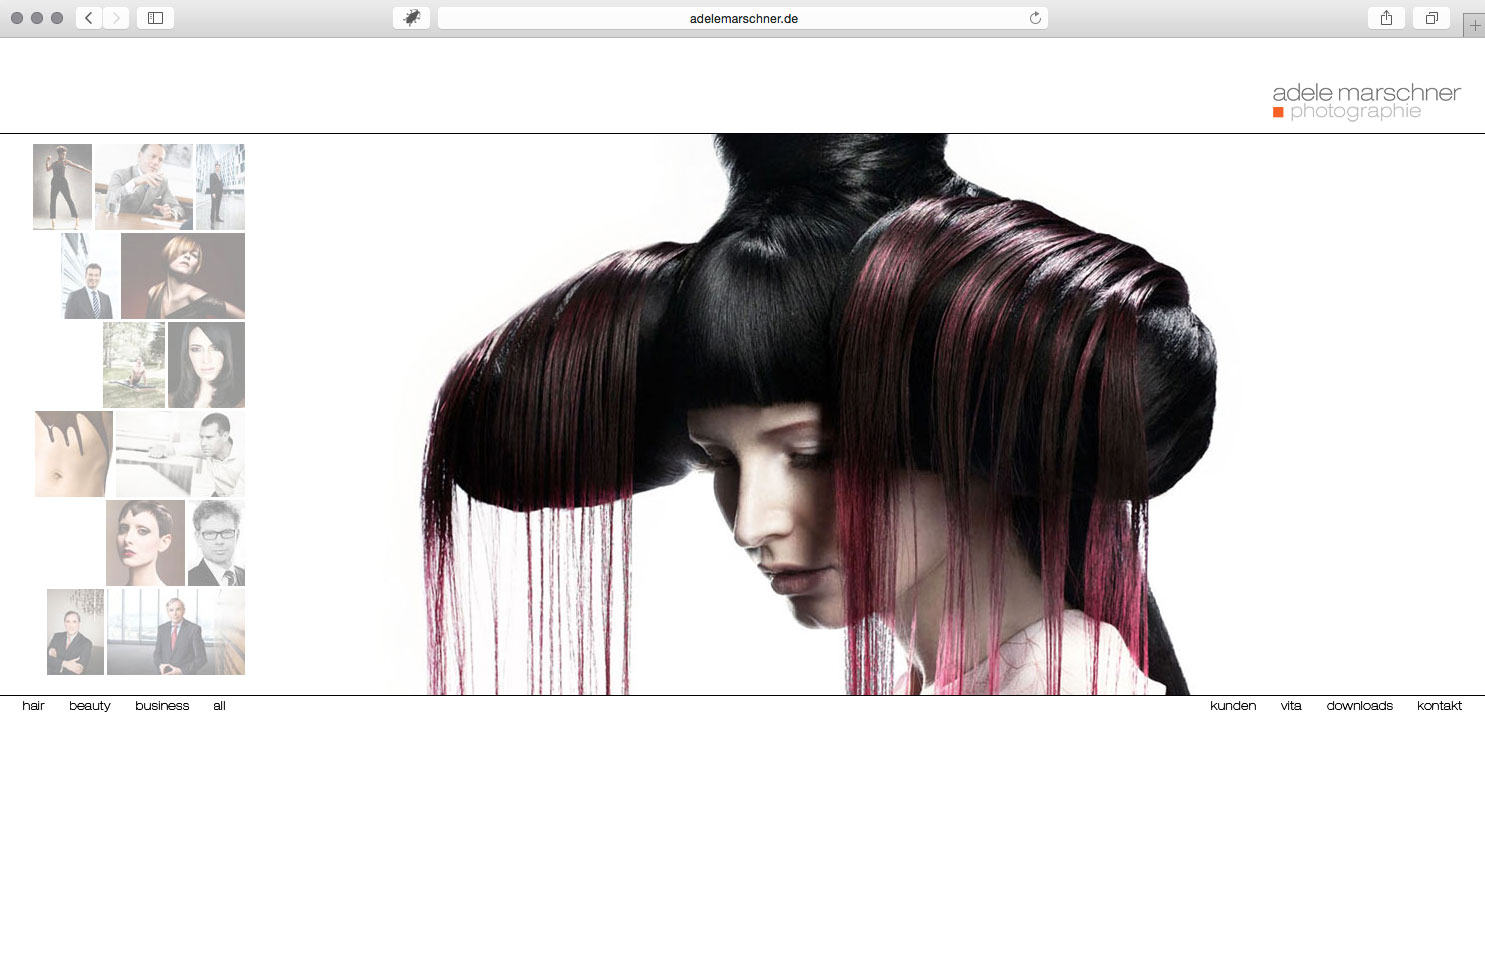 brainbreak Referenz: Website HTML Fotografin Adele Marschner